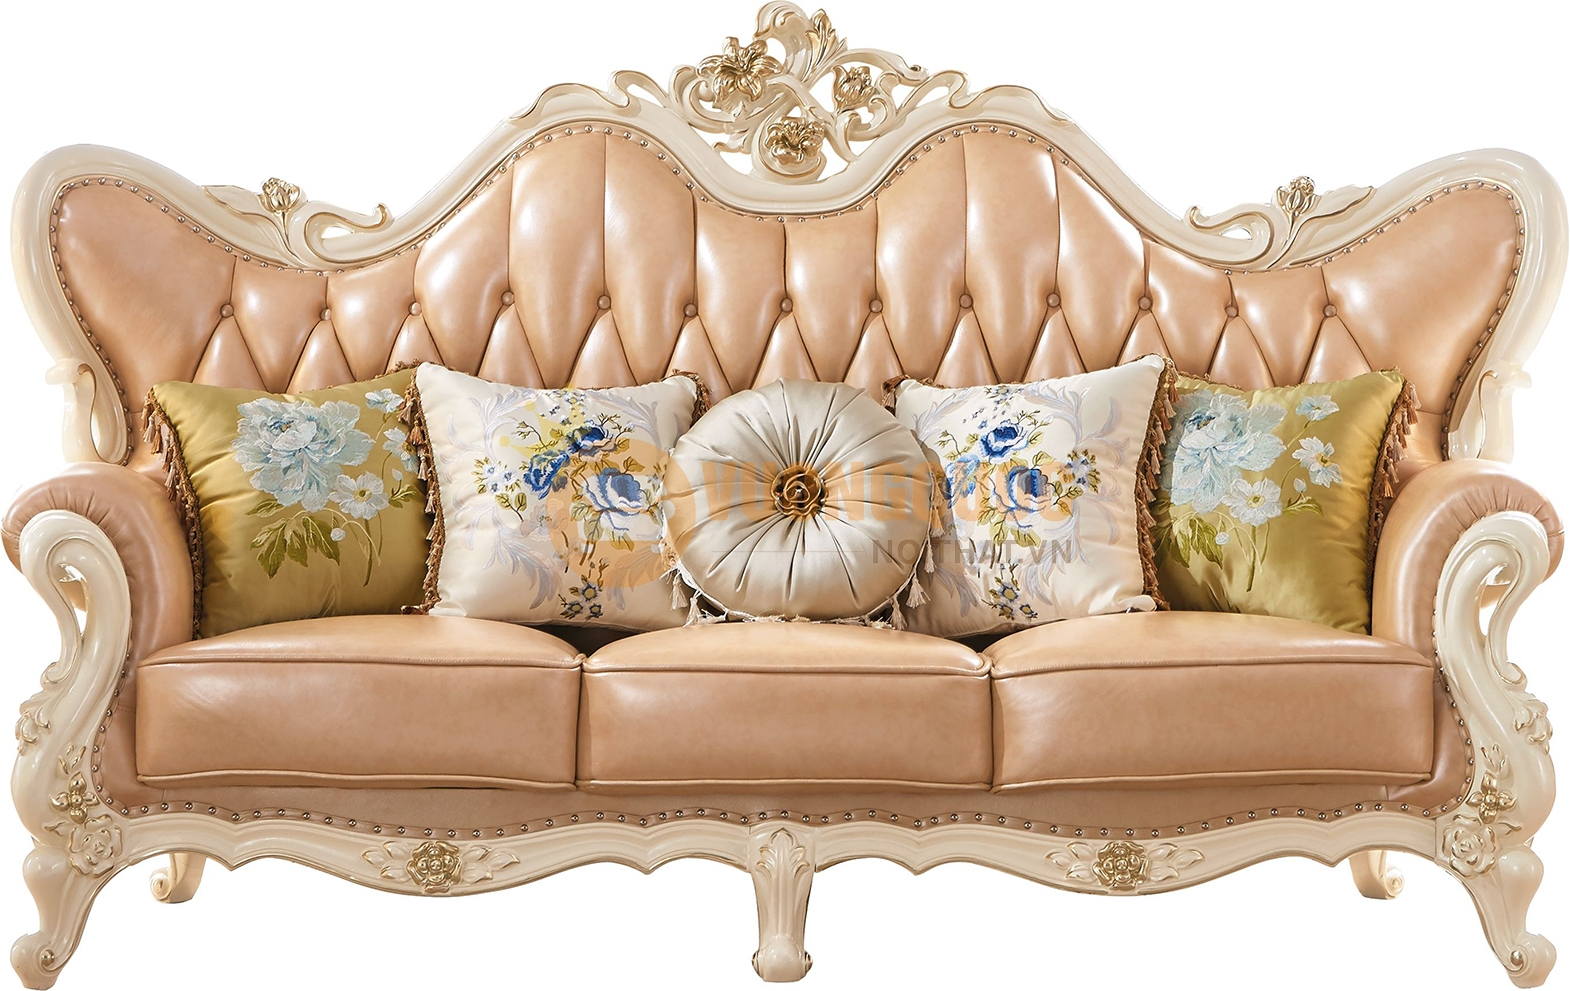 Bộ sofa phòng khách cổ điển màu sắc trang nhã FDLA16S sofa ba